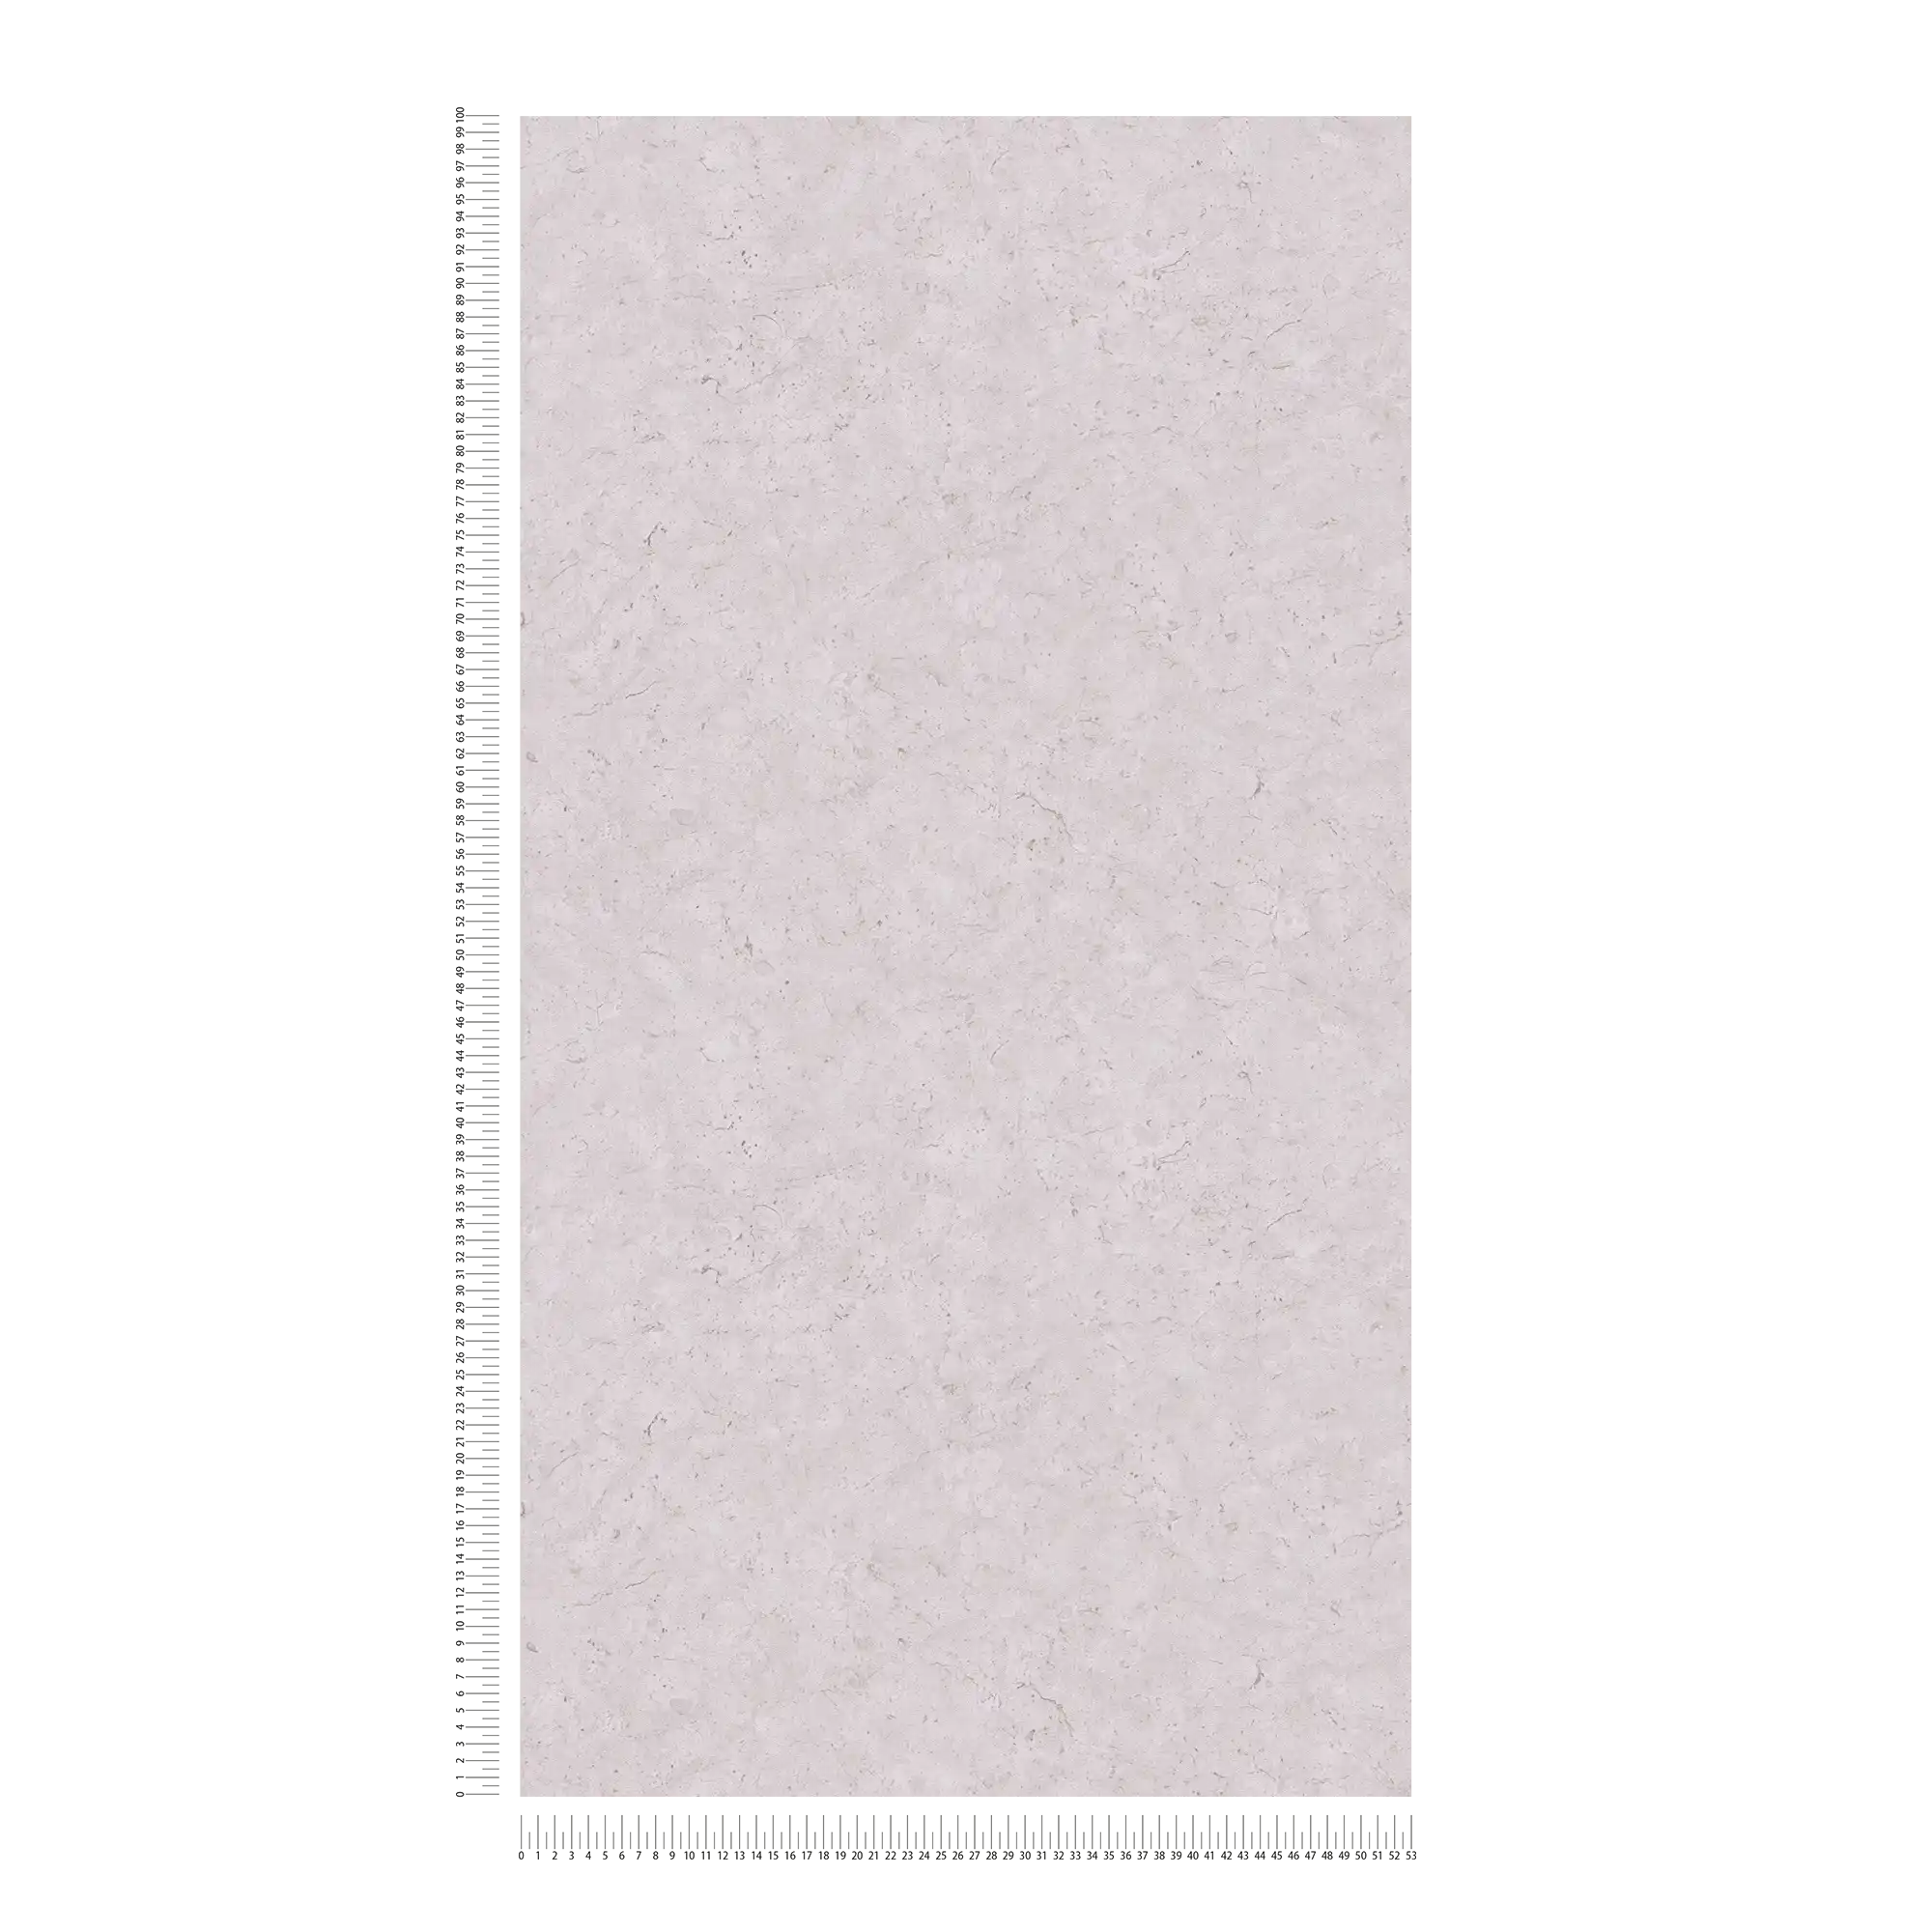             Plain non-woven wallpaper with concrete look - grey
        